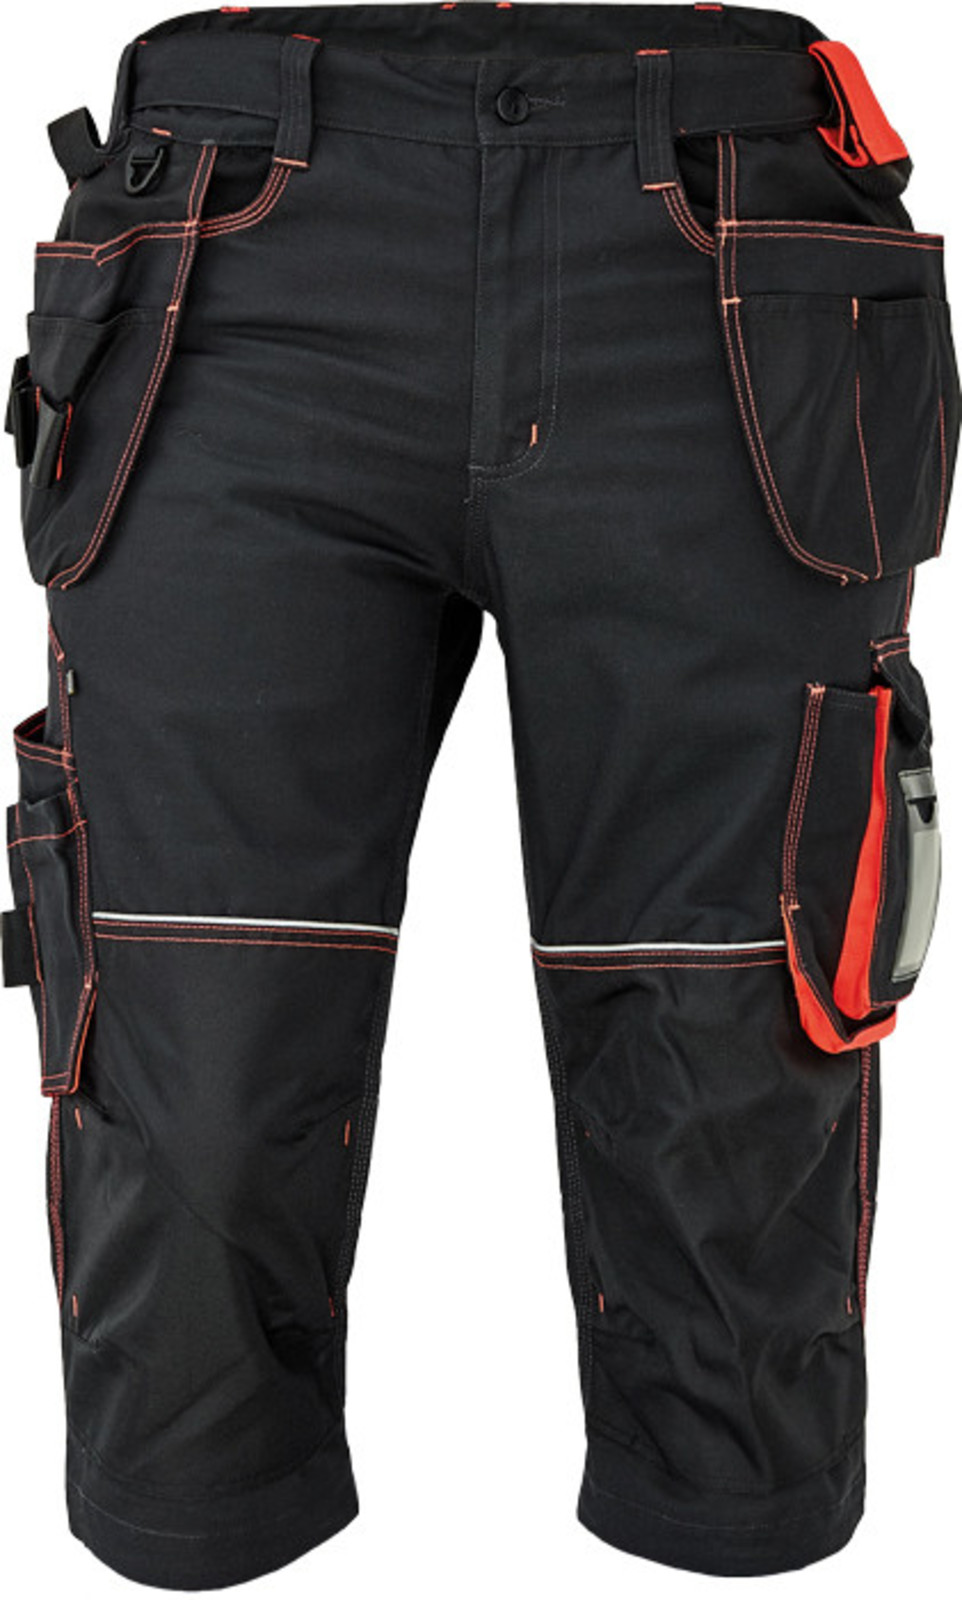 Pánske pracovné 3/4 nohavice Cerva Knoxfield 320 - veľkosť: 58, farba: antracit/červená